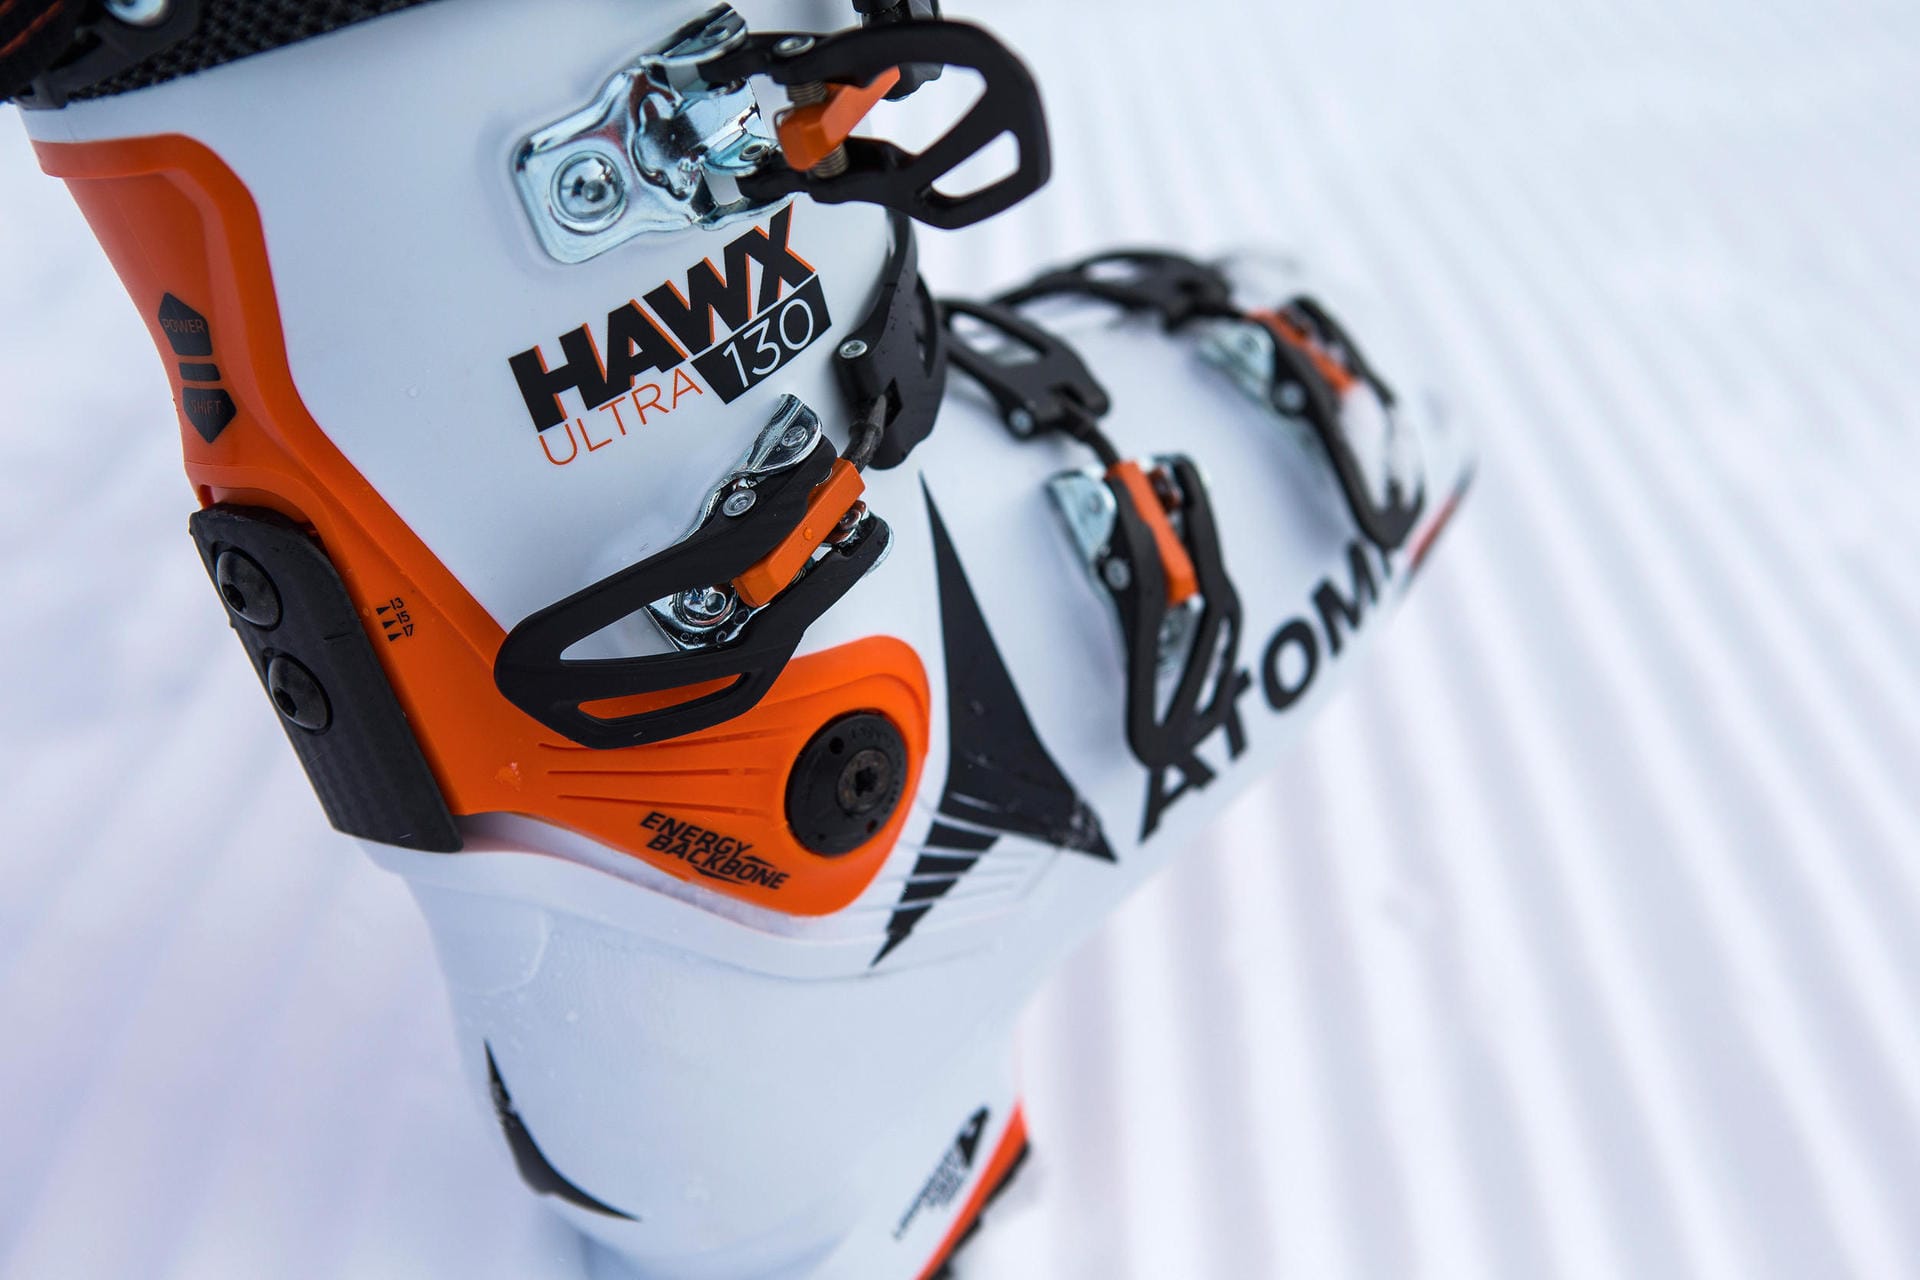 Mit rund 25 Prozent Gewichtsersparnis (im Vergleich zum Hawx mit 100 mm Leistenbreite) ist der neue Hawx Ultra 130 (559 Euro, www.atomic.com) der leichteste Alpin-Skischuh von Atomic.